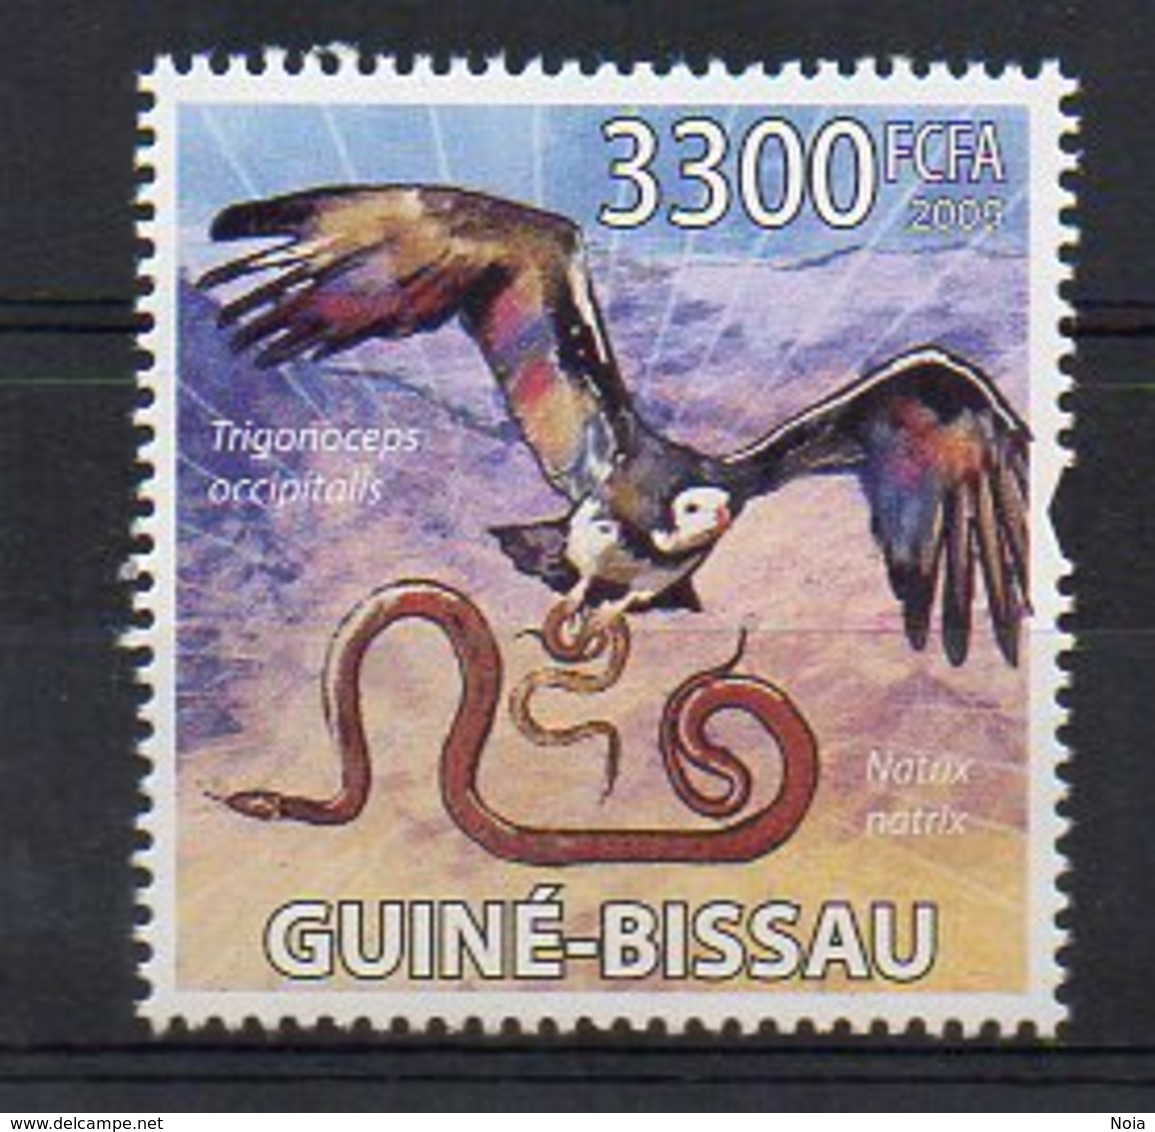 GUINEA-BISSAU. BIRDS RAPTORS. MNH (2R1015) - Eagles & Birds Of Prey